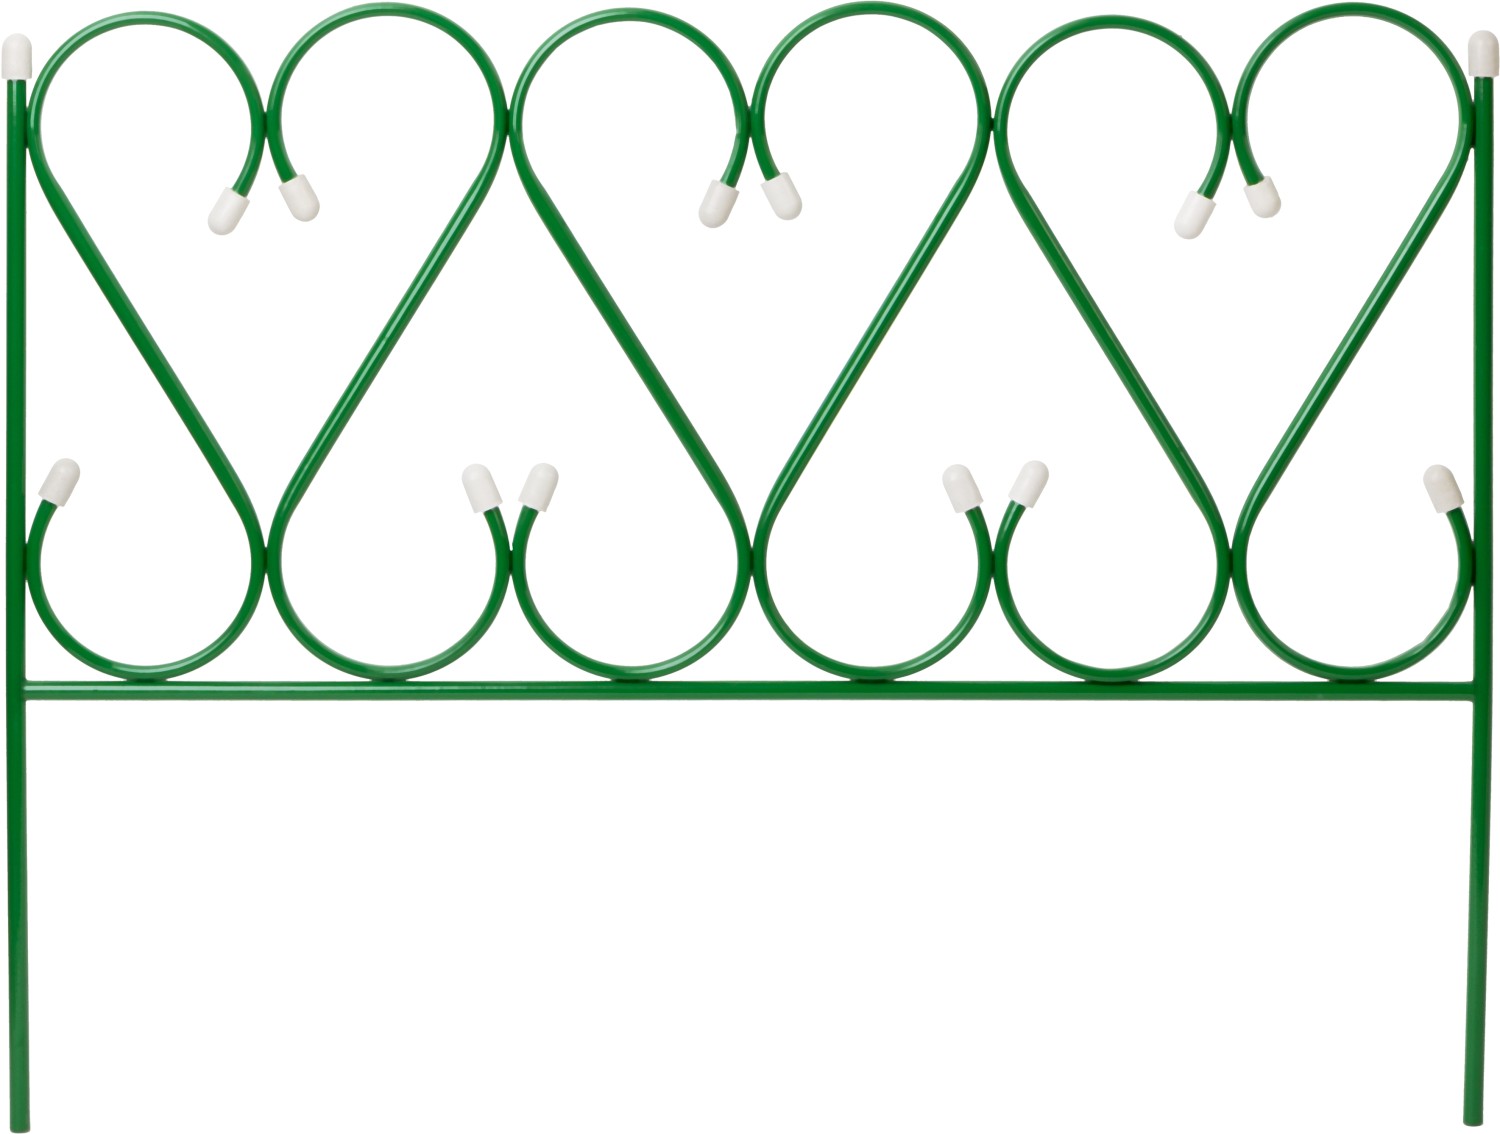 GRINDA РЕНЕССАНС, 50 x 345 см, металлический, стальная труба d 10, 5 секций, декоративный забор (422263)